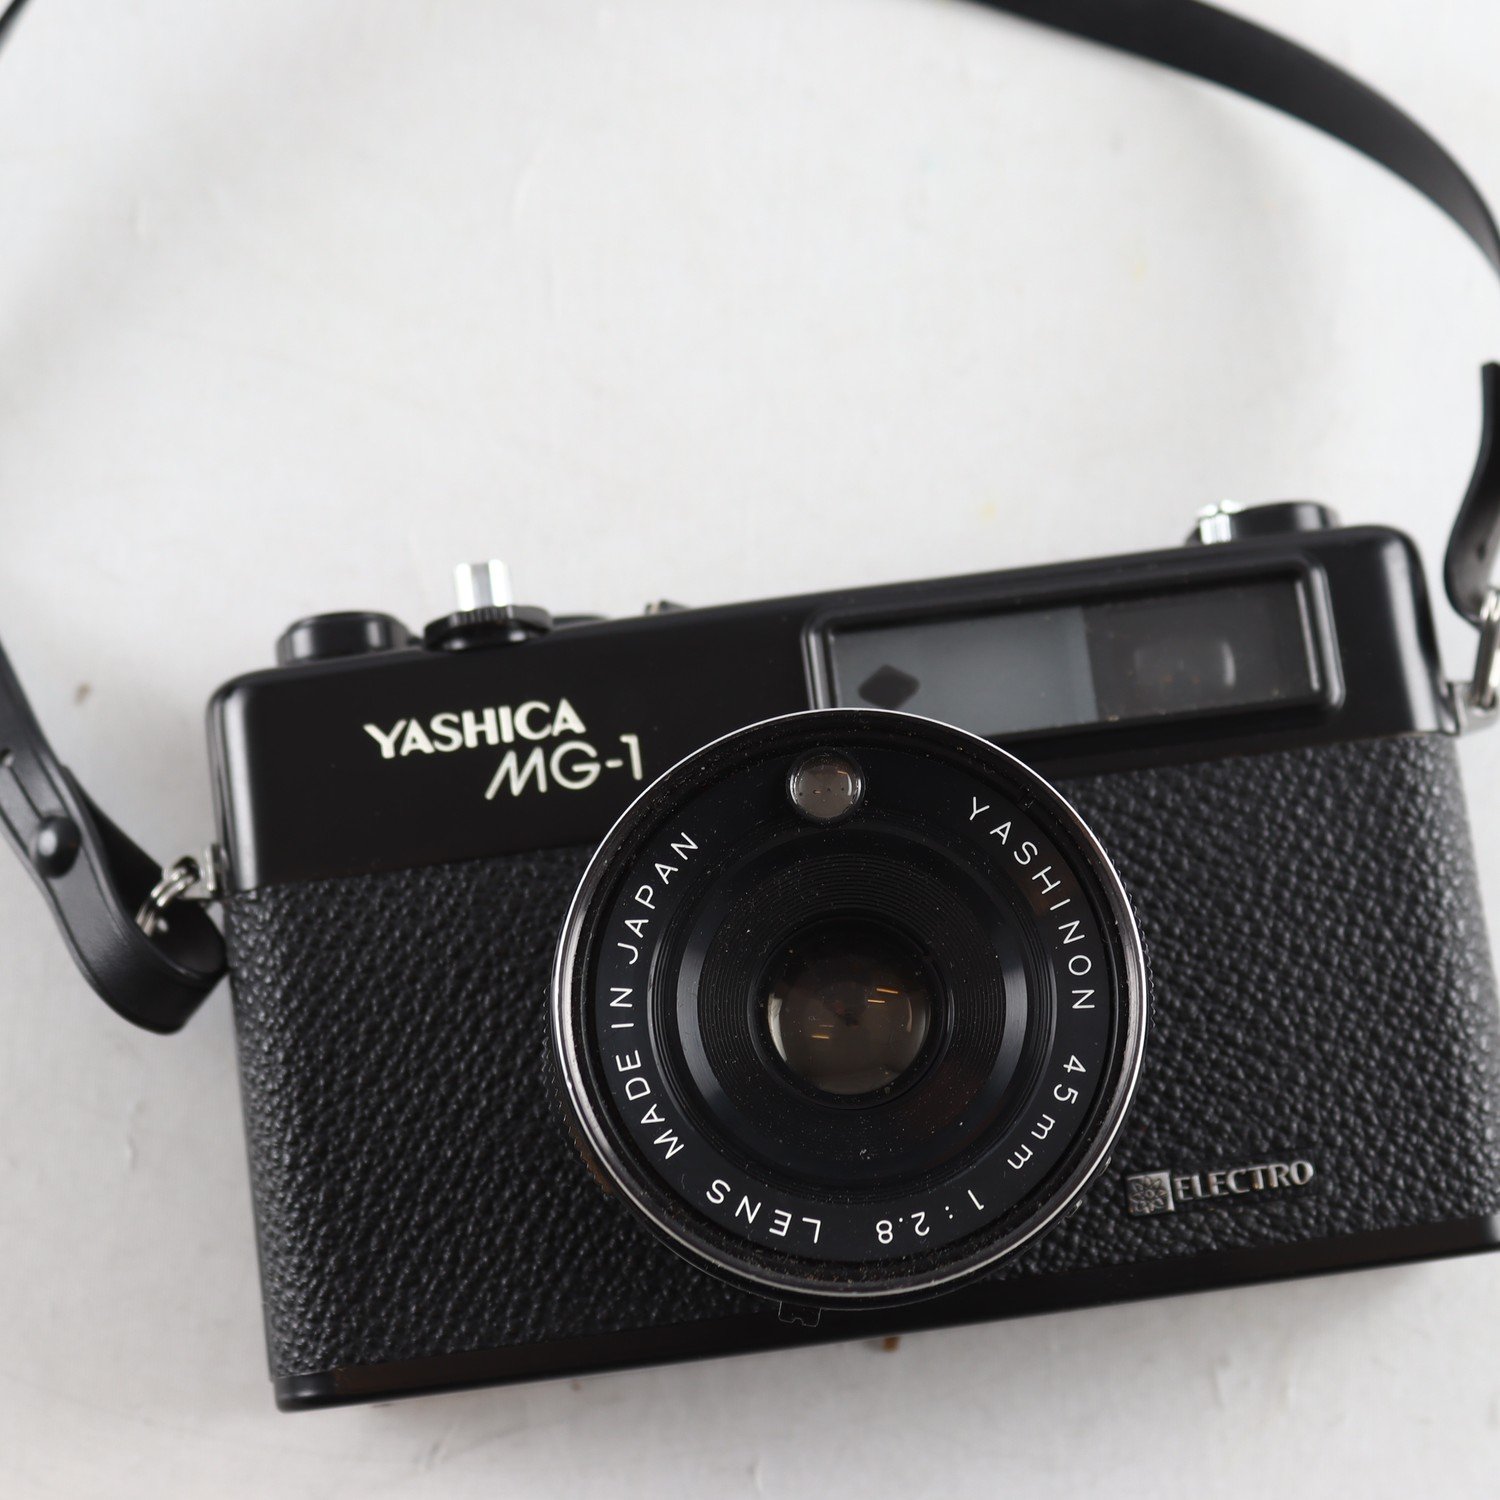 Kamera, Yashica MG-1.